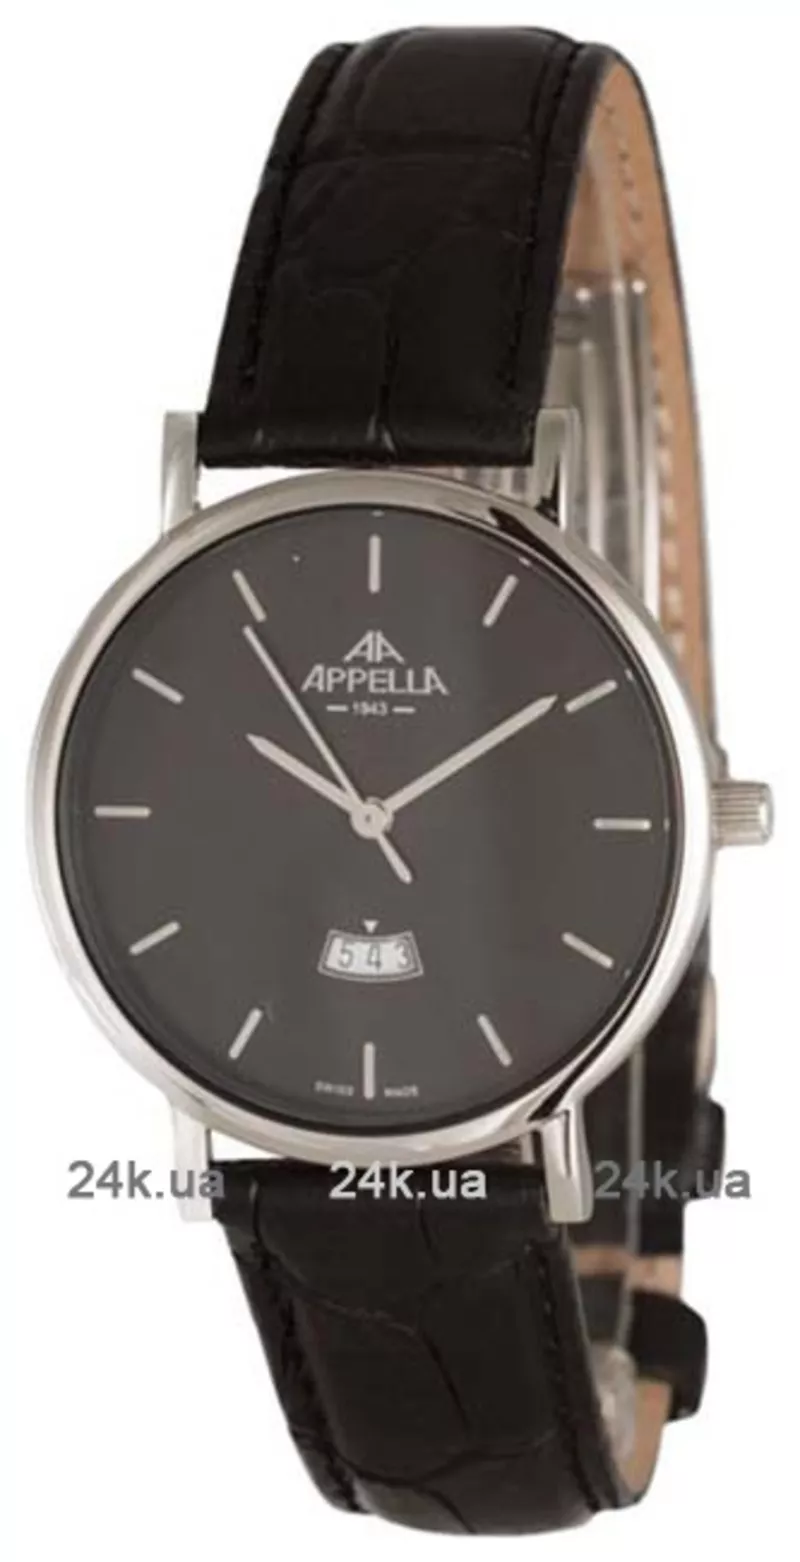 Часы Appella 4403.03.0.1.04